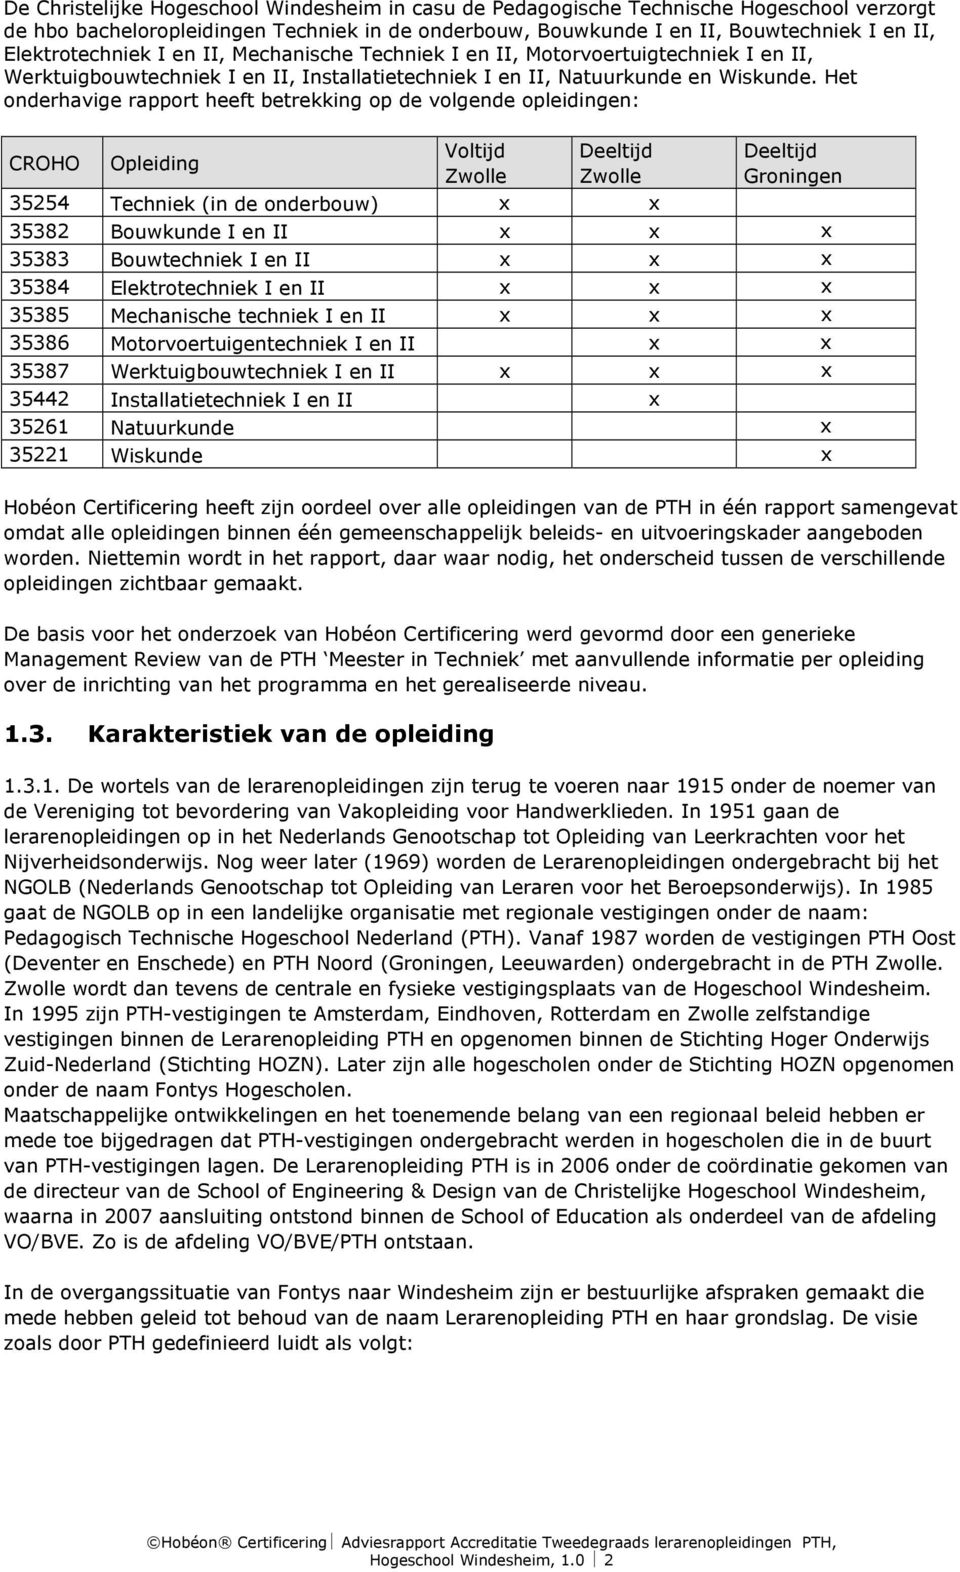 Het onderhavige rapport heeft betrekking op de volgende opleidingen: CROHO Opleiding Voltijd Zwolle Deeltijd Zwolle Deeltijd Groningen 35254 Techniek (in de onderbouw) x x 35382 Bouwkunde I en II x x